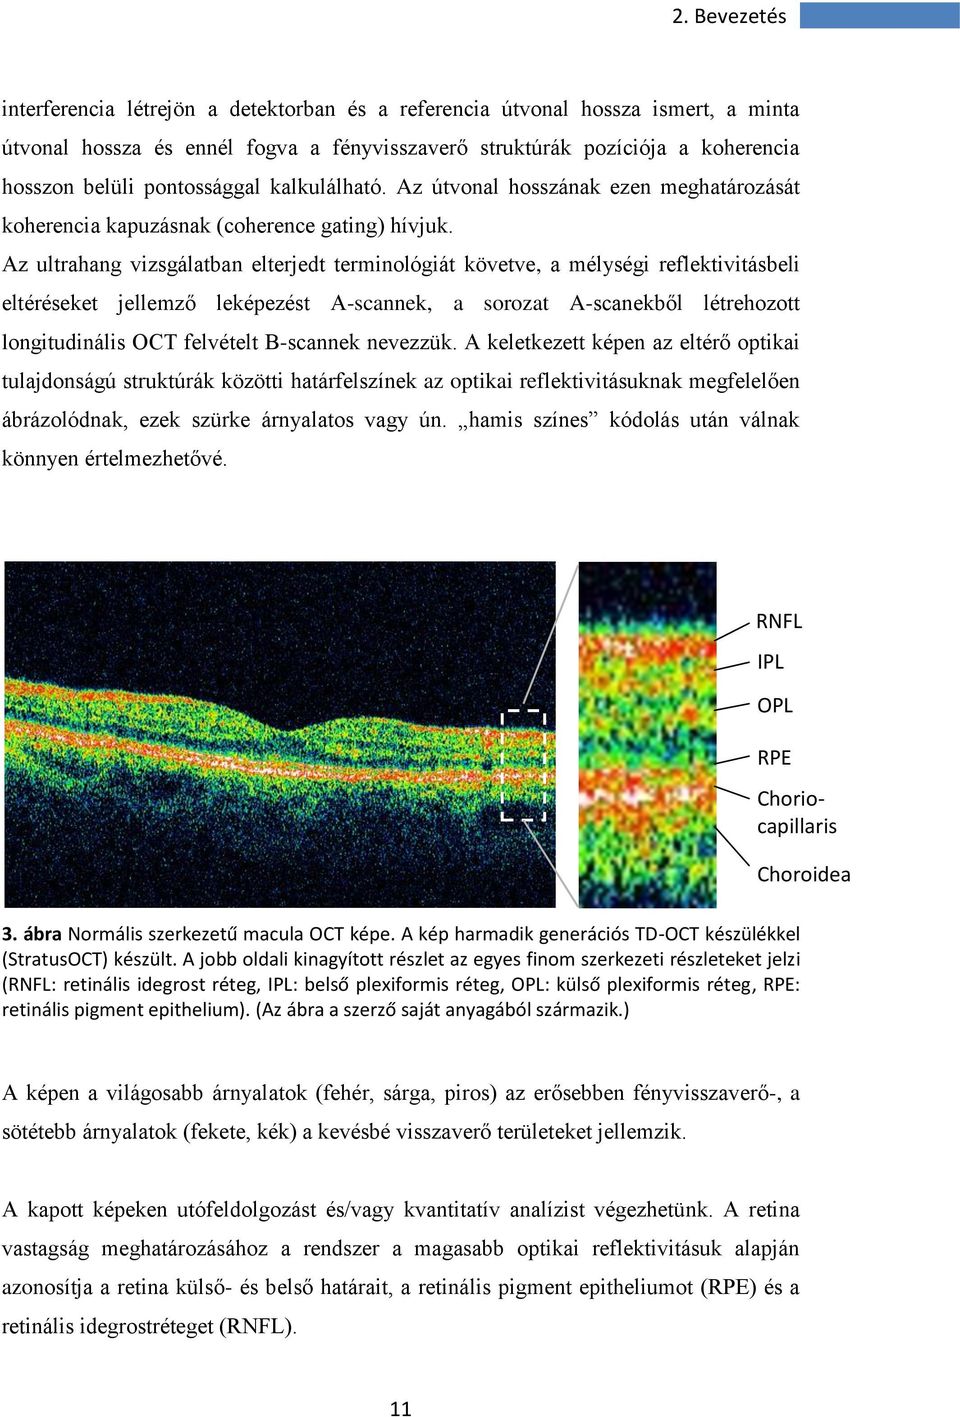 Az ultrahang vizsgálatban elterjedt terminológiát követve, a mélységi reflektivitásbeli eltéréseket jellemző leképezést A-scannek, a sorozat A-scanekből létrehozott longitudinális OCT felvételt